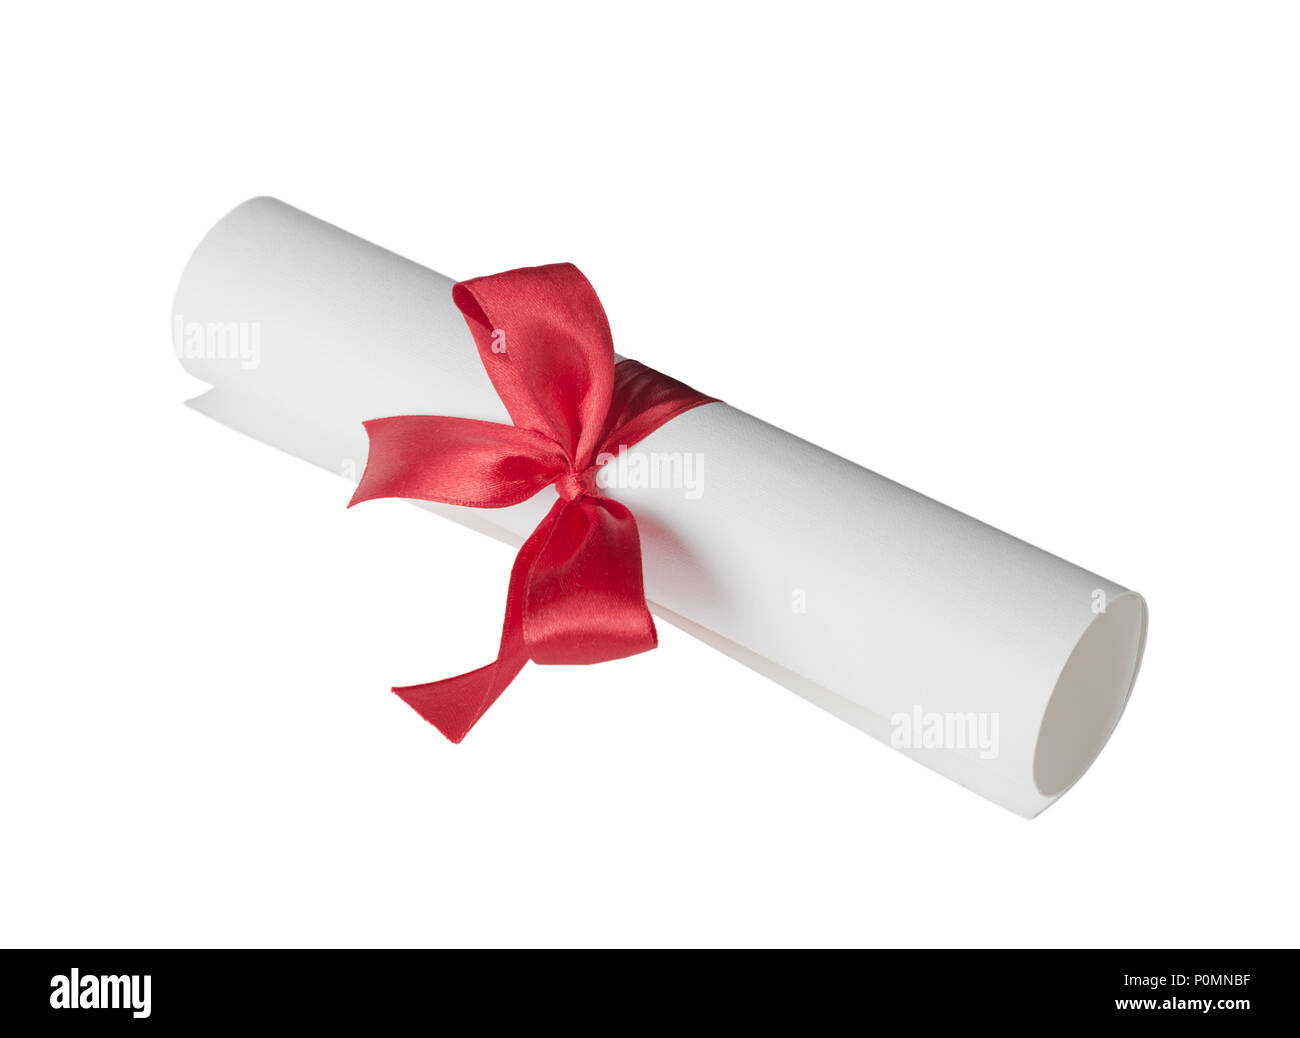 Papier blättern (Diplom) mit roter Schleife auf einem weißen Hintergrund gebunden Stockfoto